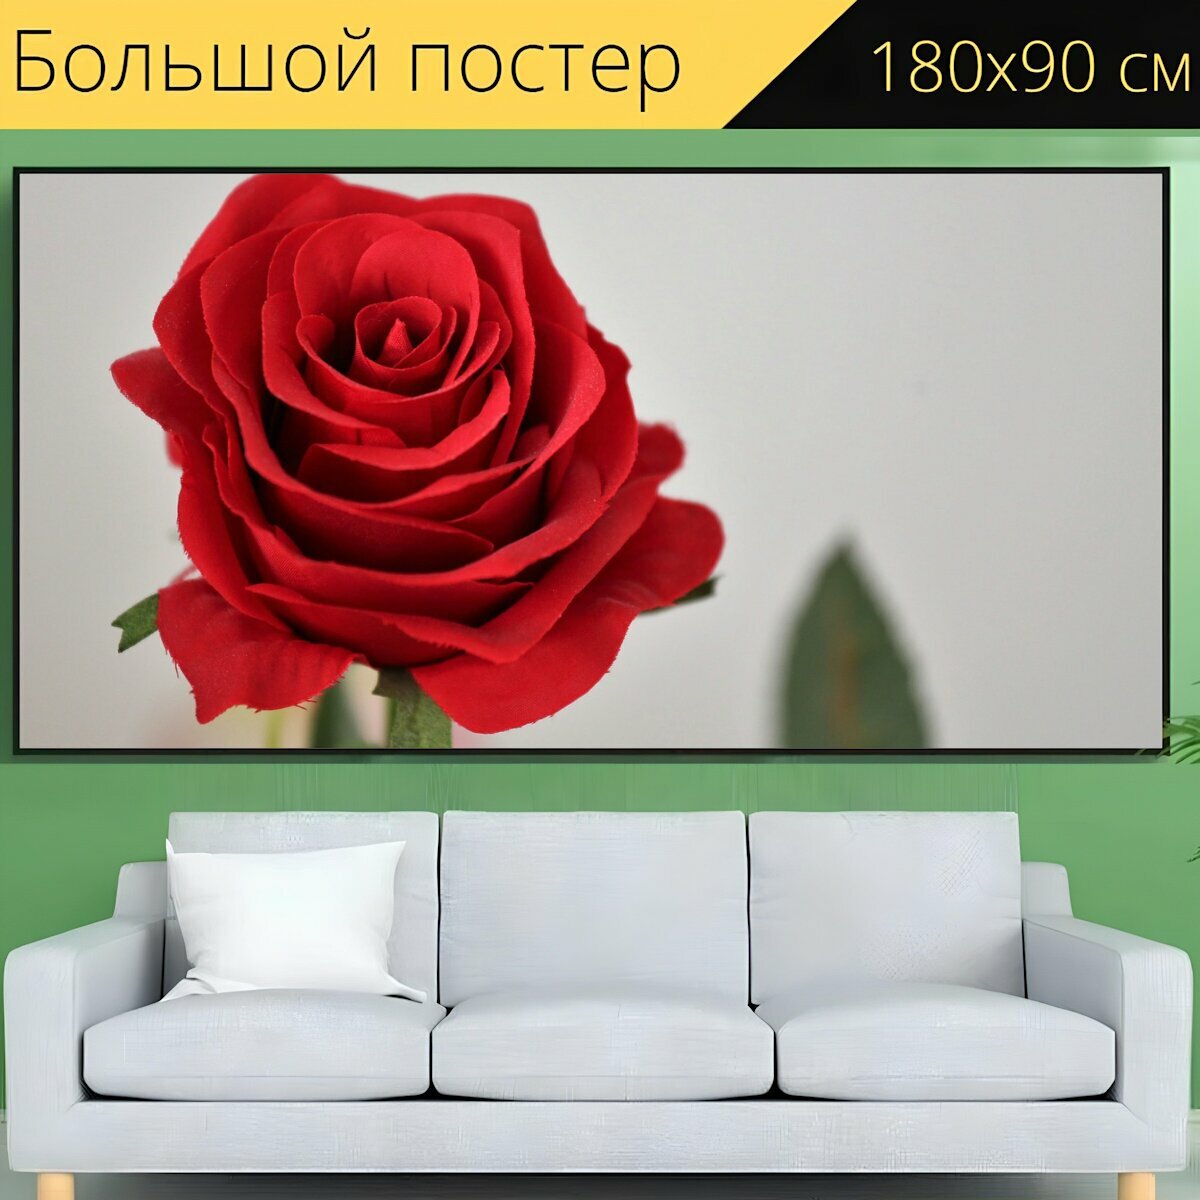 Большой постер "Искусственный красная роза, цветок, украшение" 180 x 90 см. для интерьера